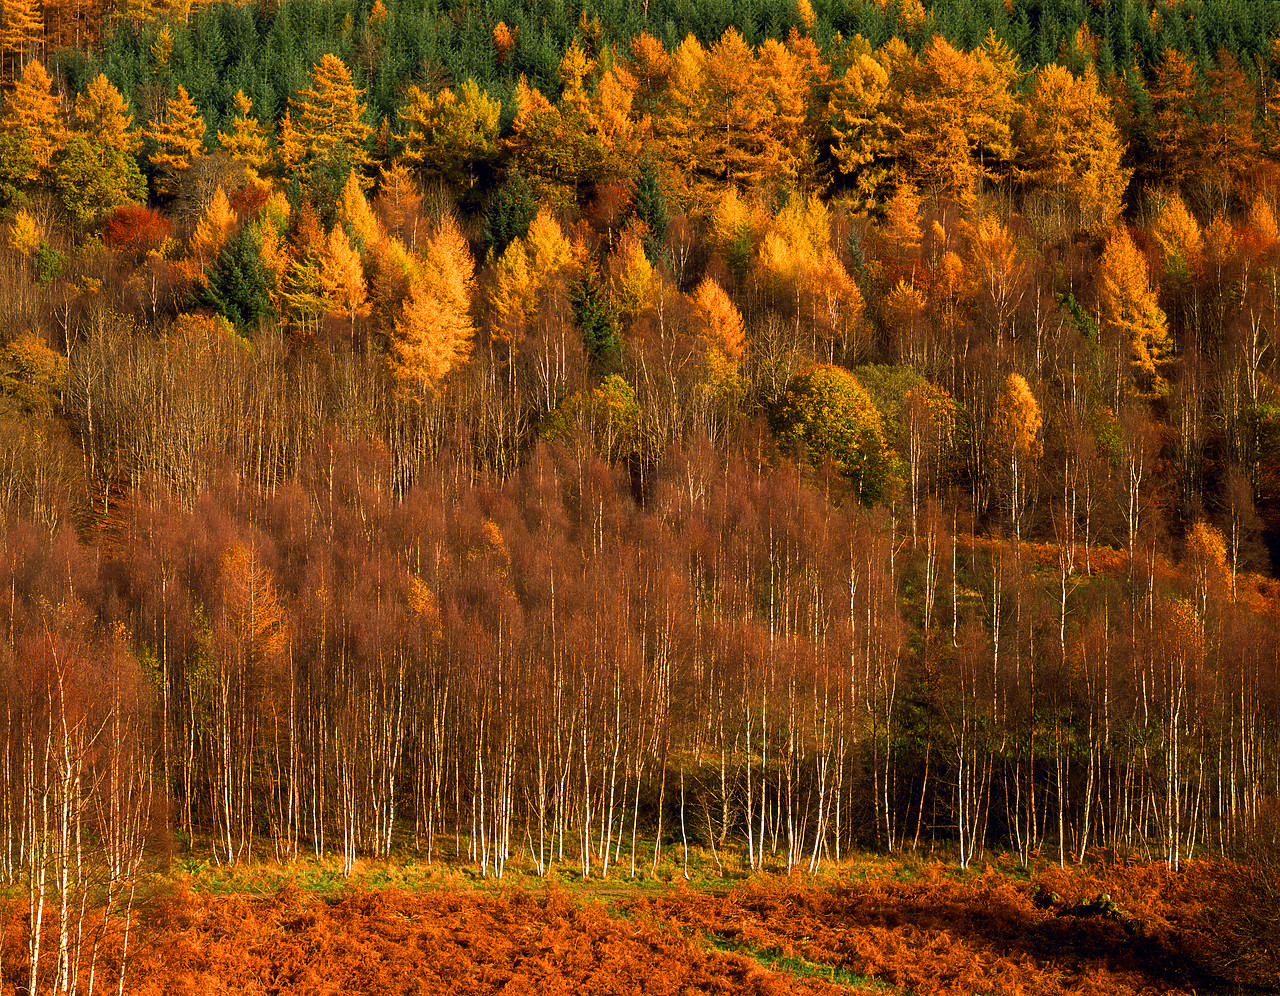 #060752-4 - Silver Birch & Larch Forest in Autumn, Tayside Region, Scotland